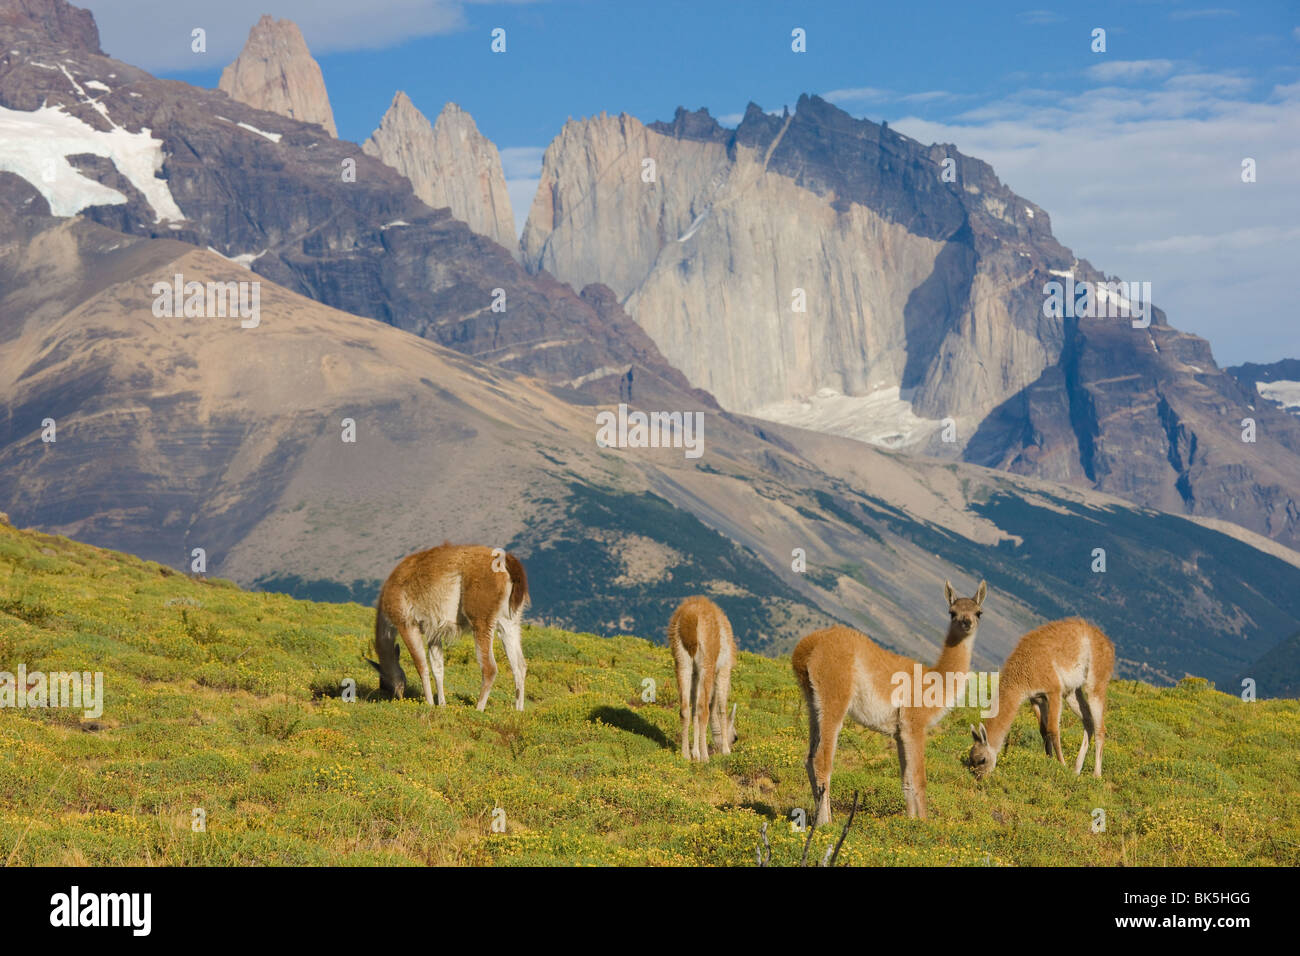 Guanaco (Lama guanicoe), Parc National Torres del Paine, Patagonie, Chili Banque D'Images